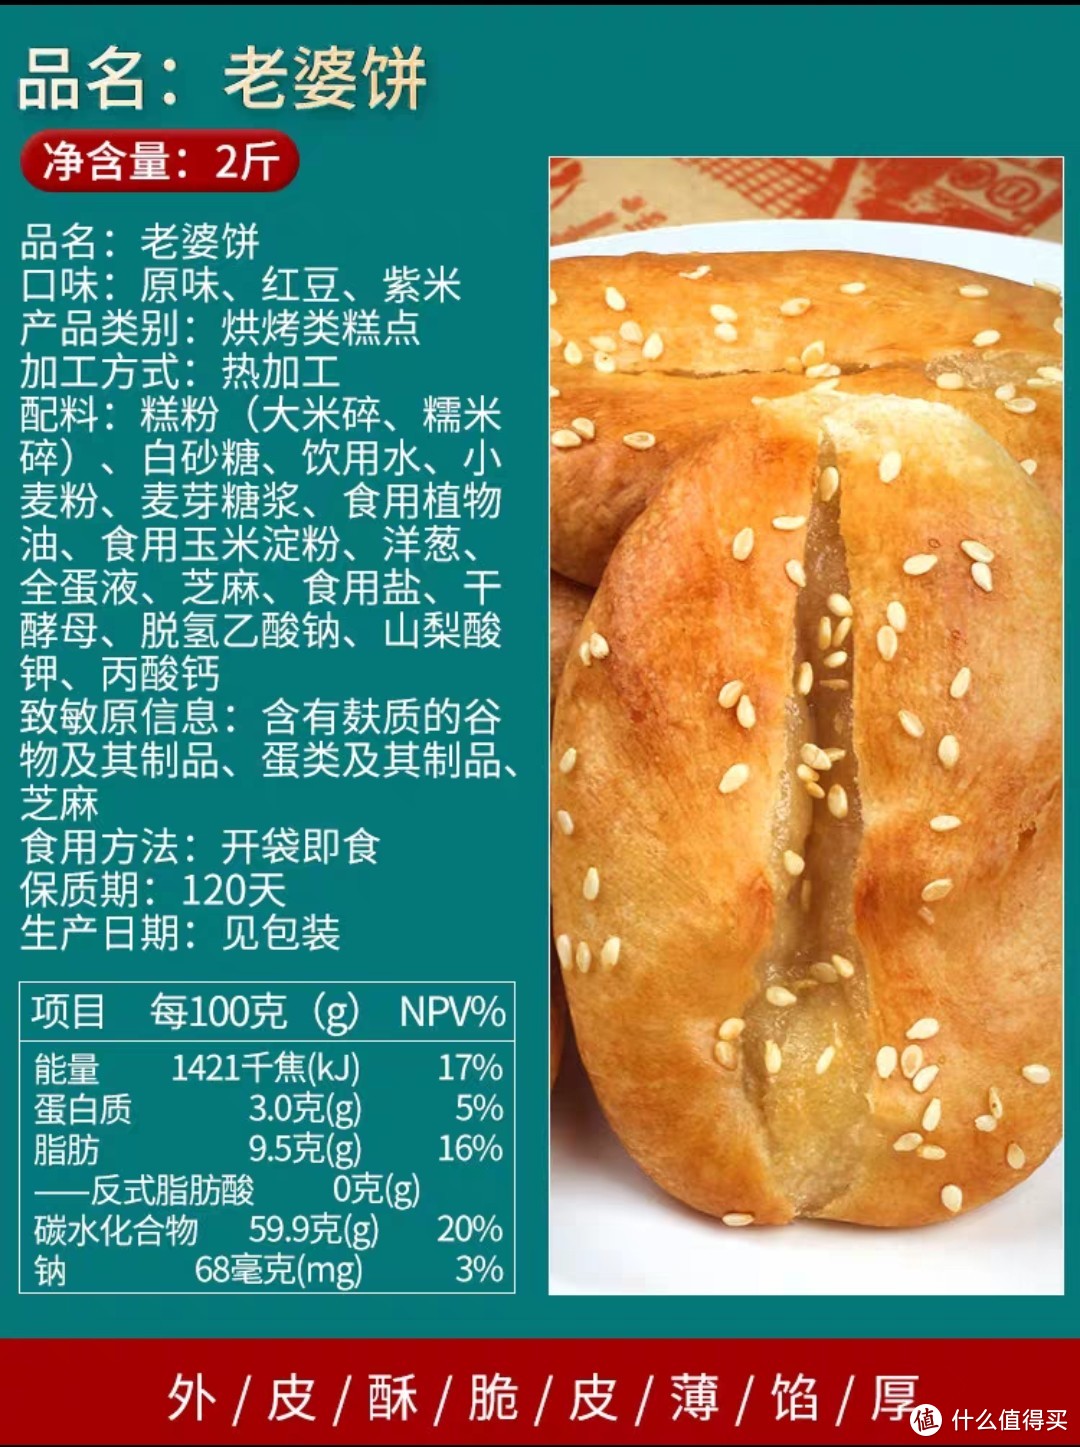 乐盟红豆老婆糯米饼馅早餐零食广东特产正宗传统糕点面包食品整箱